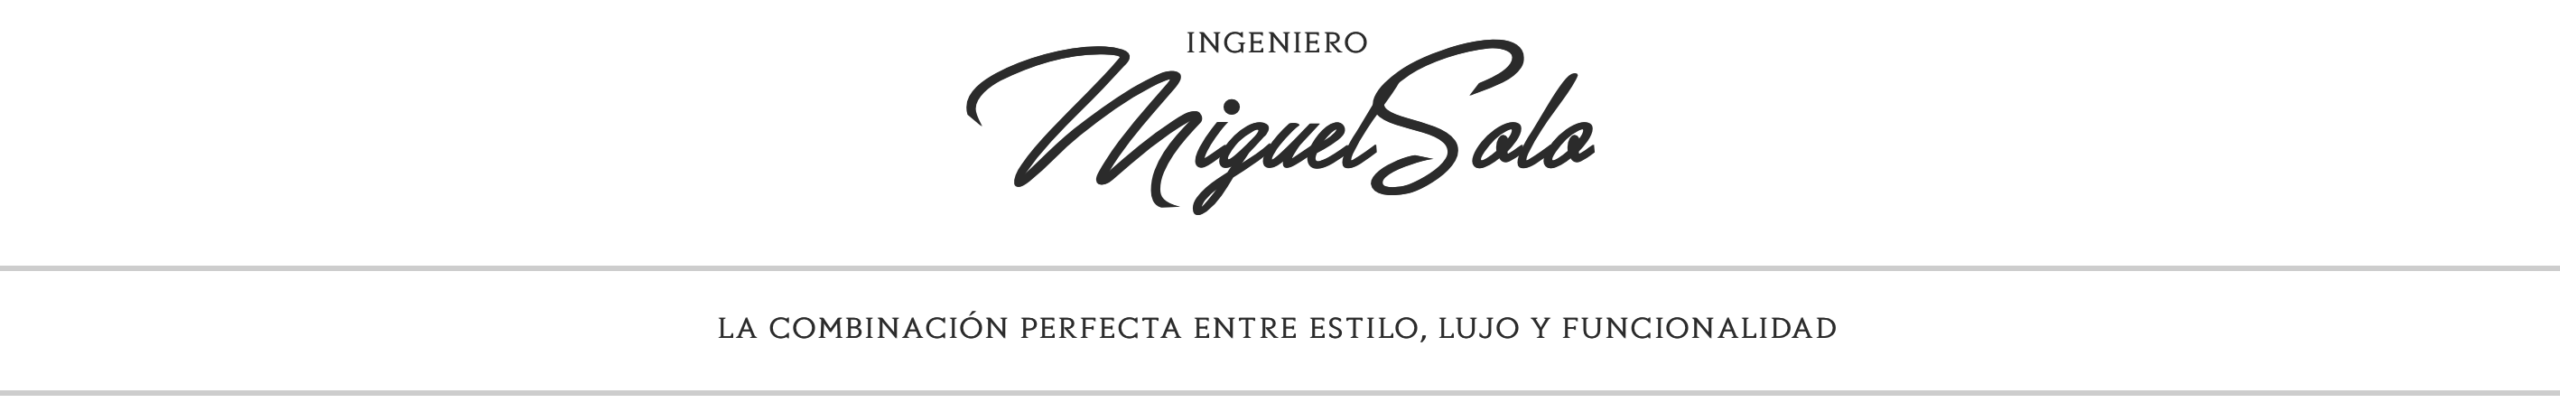 Miguel Solo Engineer